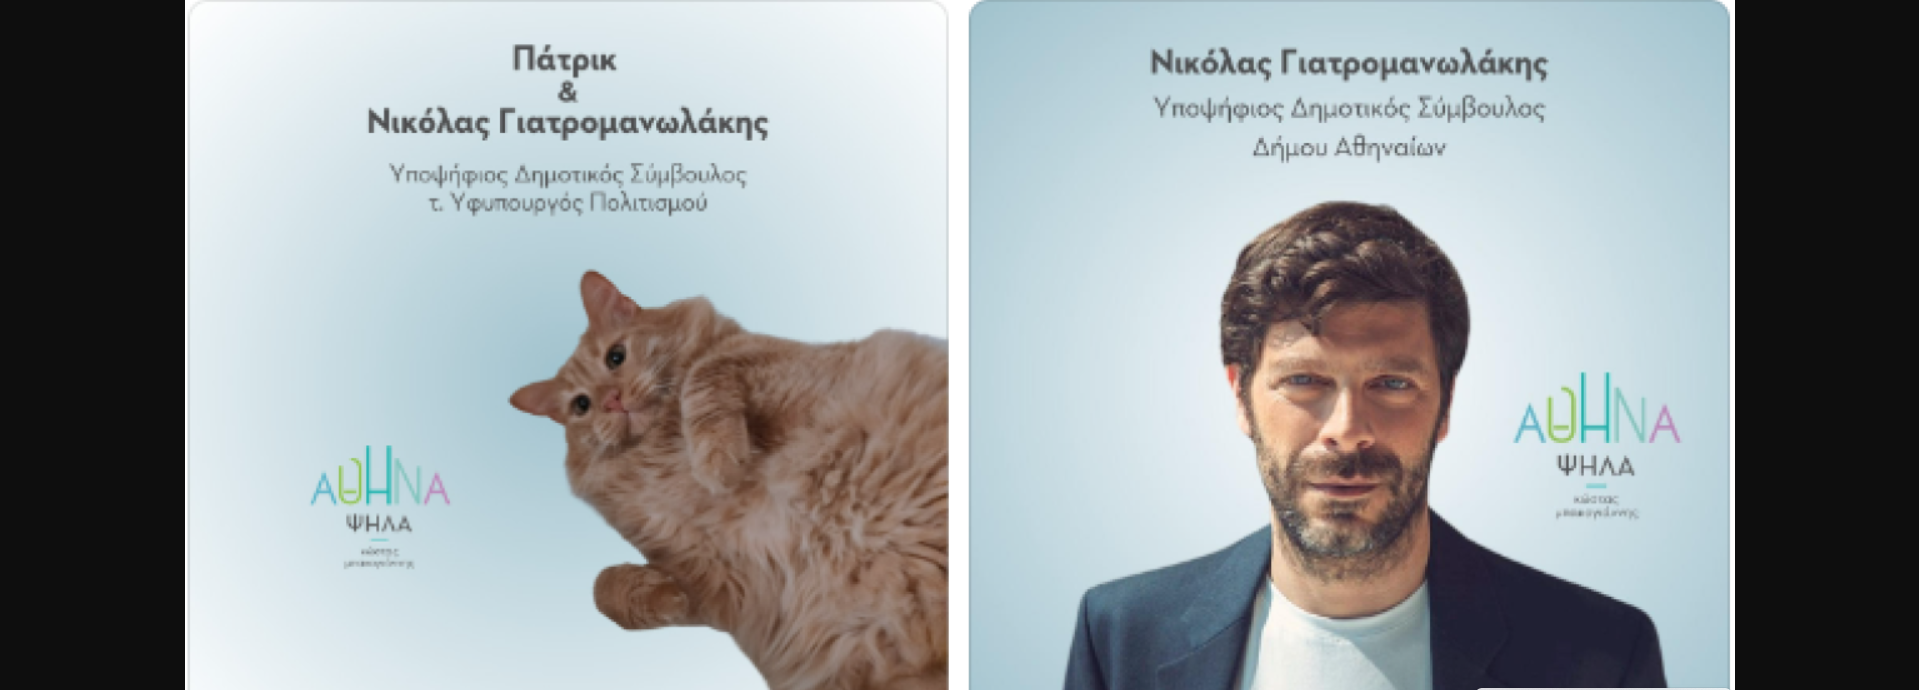 Ν.Γιατρομανωλάκης: Επιστράτευσε τον… γάτο του για να μαζέψει ψήφους!